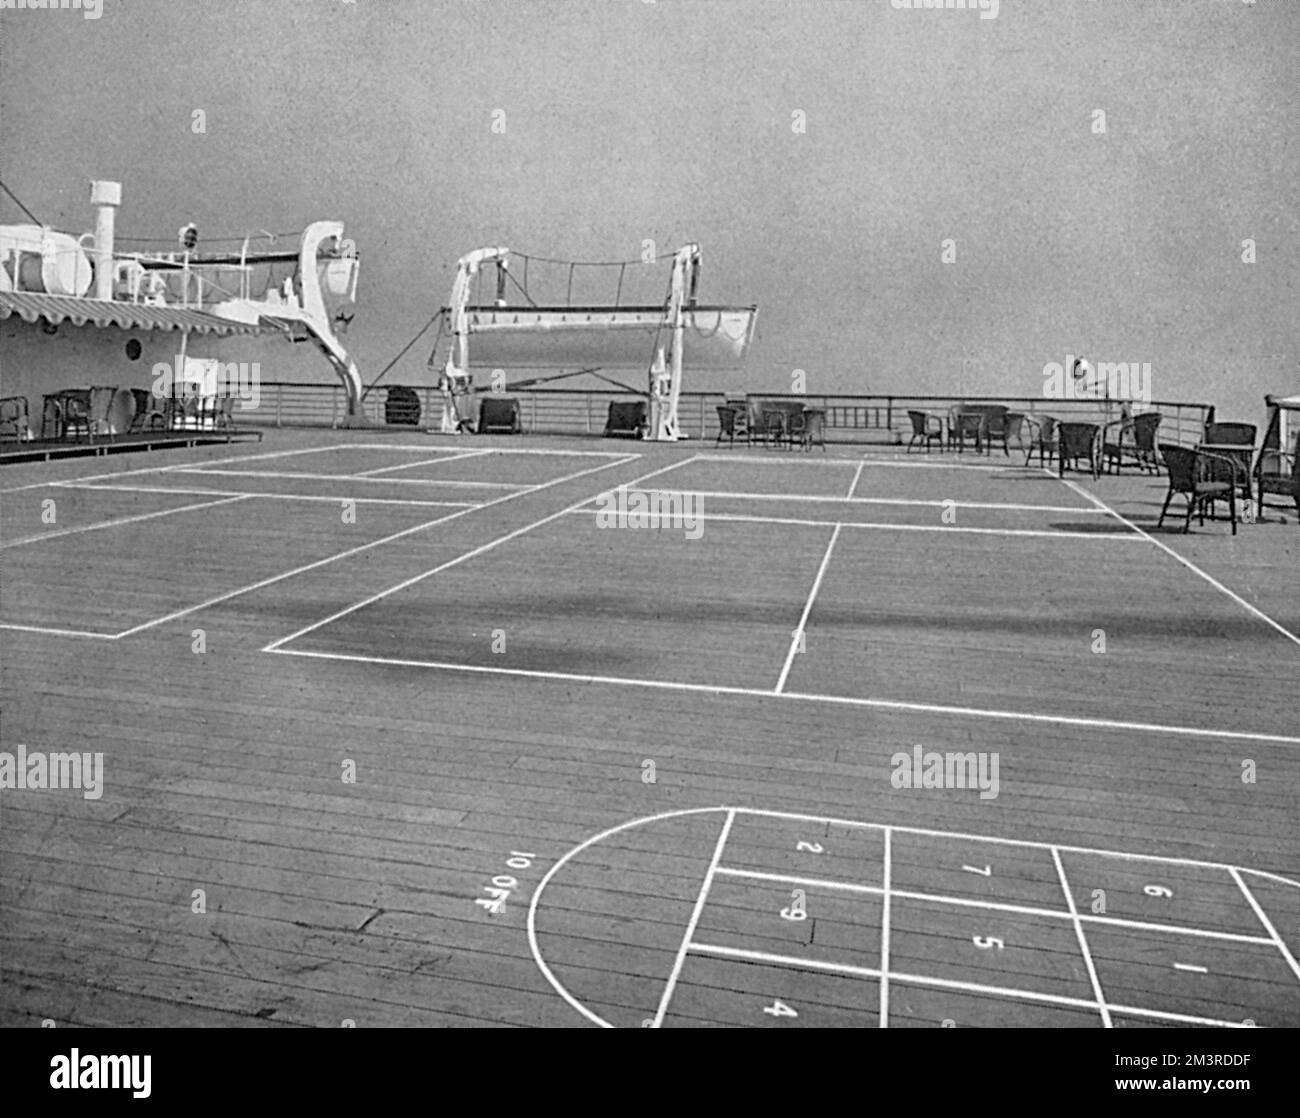 Un espace dégagé de 76 pieds sur 63 pieds - le pont sportif de la Reina del Pacifico qui devait faire le tour de l'Amérique du Sud en 1932. Avec un poids de 17000 tonnes, c'était le navire à moteur le plus rapide de Grande-Bretagne à l'époque. Date: 1931 Banque D'Images